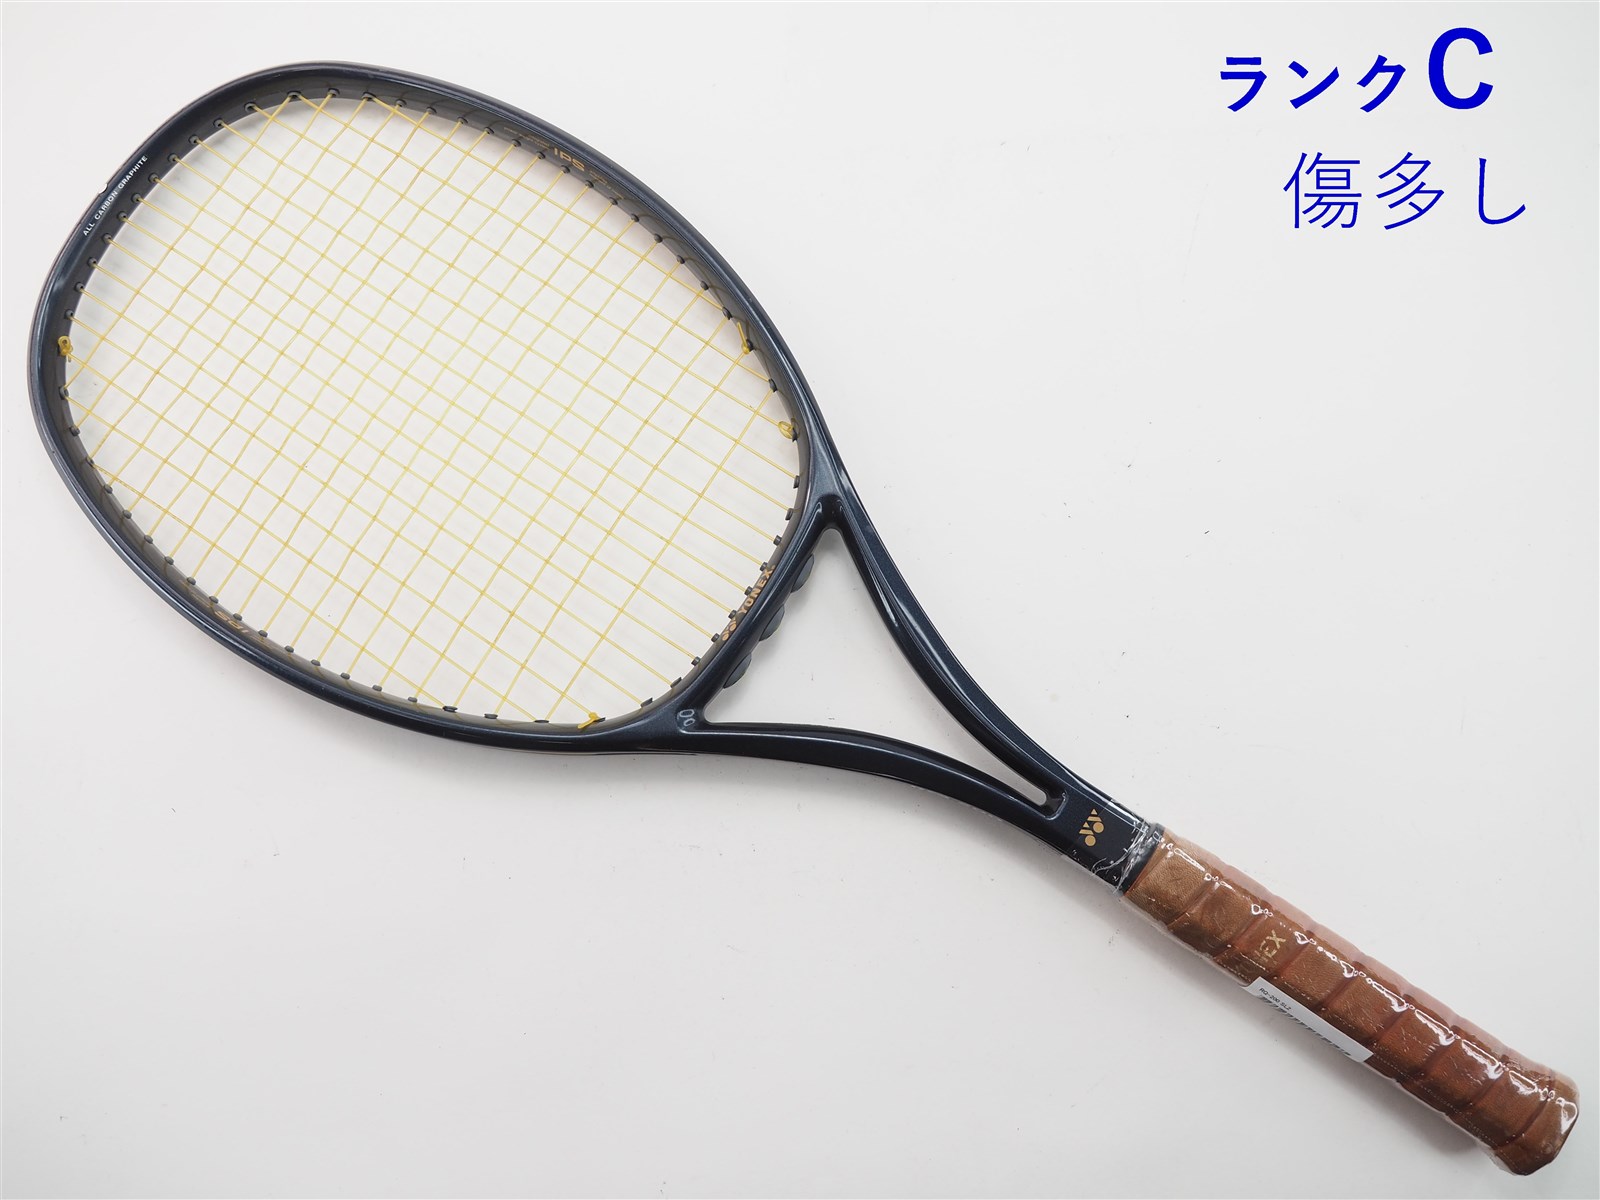 【中古】ヨネックス RQ-200YONEX RQ-200(SL2)【中古 テニスラケット】